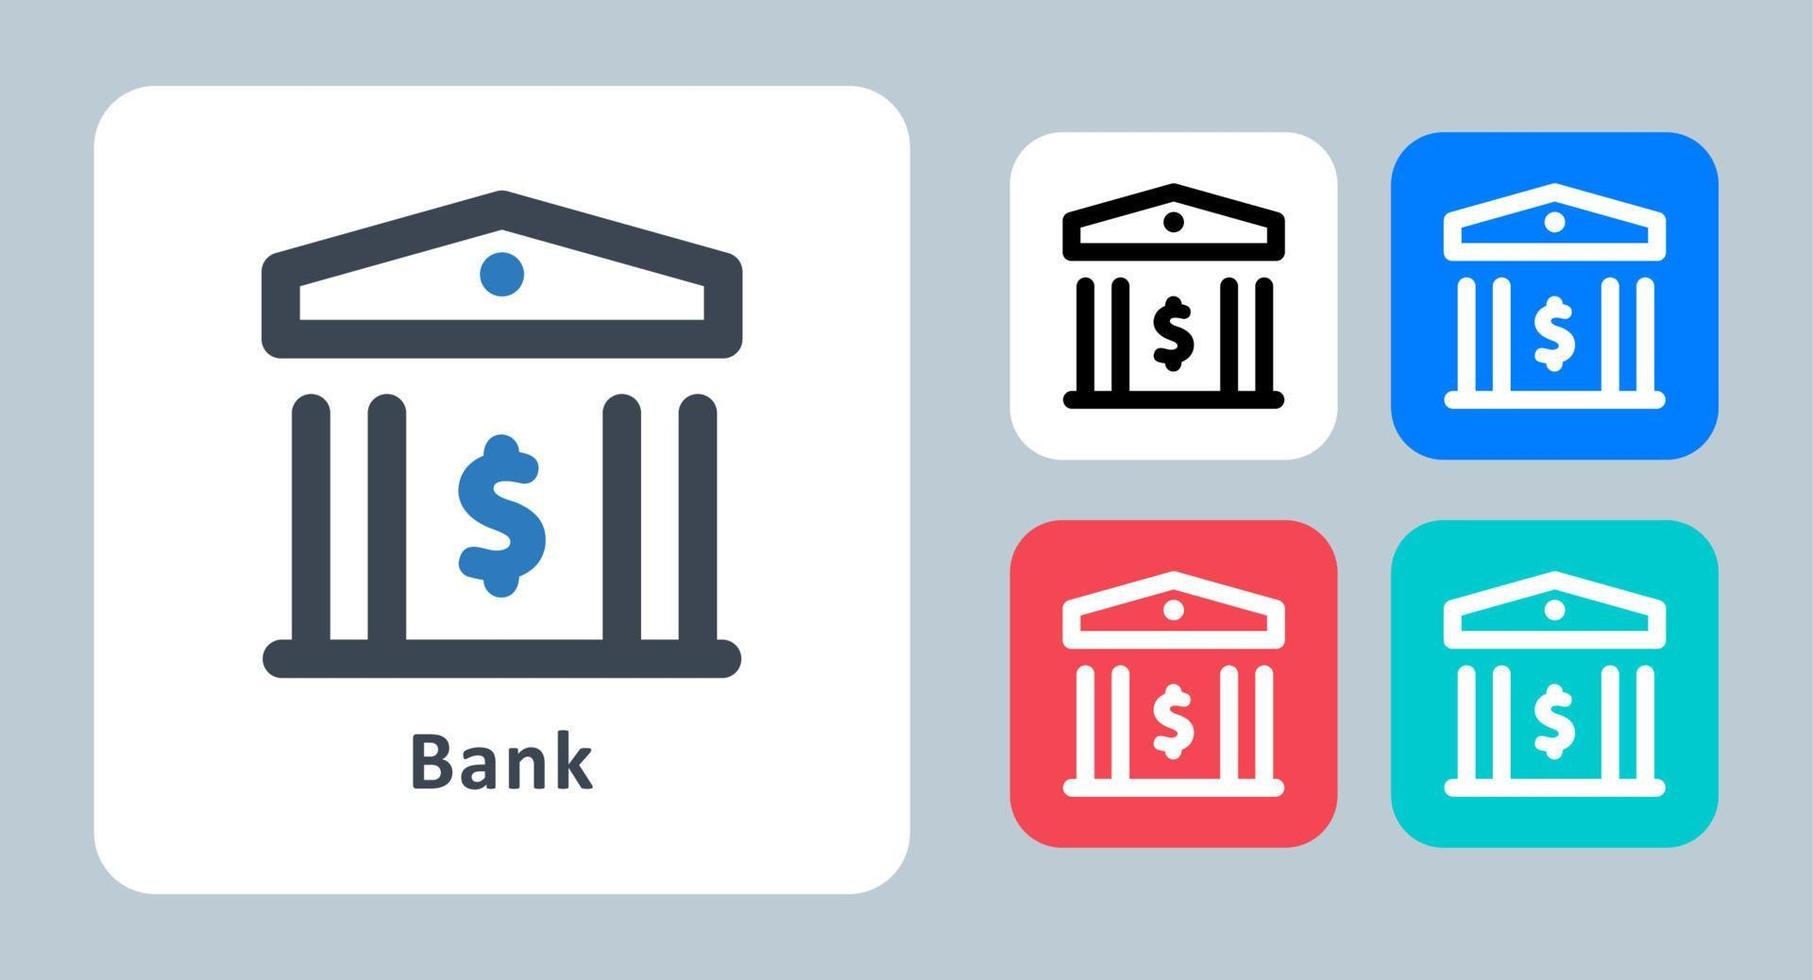 icona della banca - illustrazione vettoriale. banca, finanza, soldi, deposito, risparmio, bancario, costruzione, linea, contorno, piatto, icone. vettore